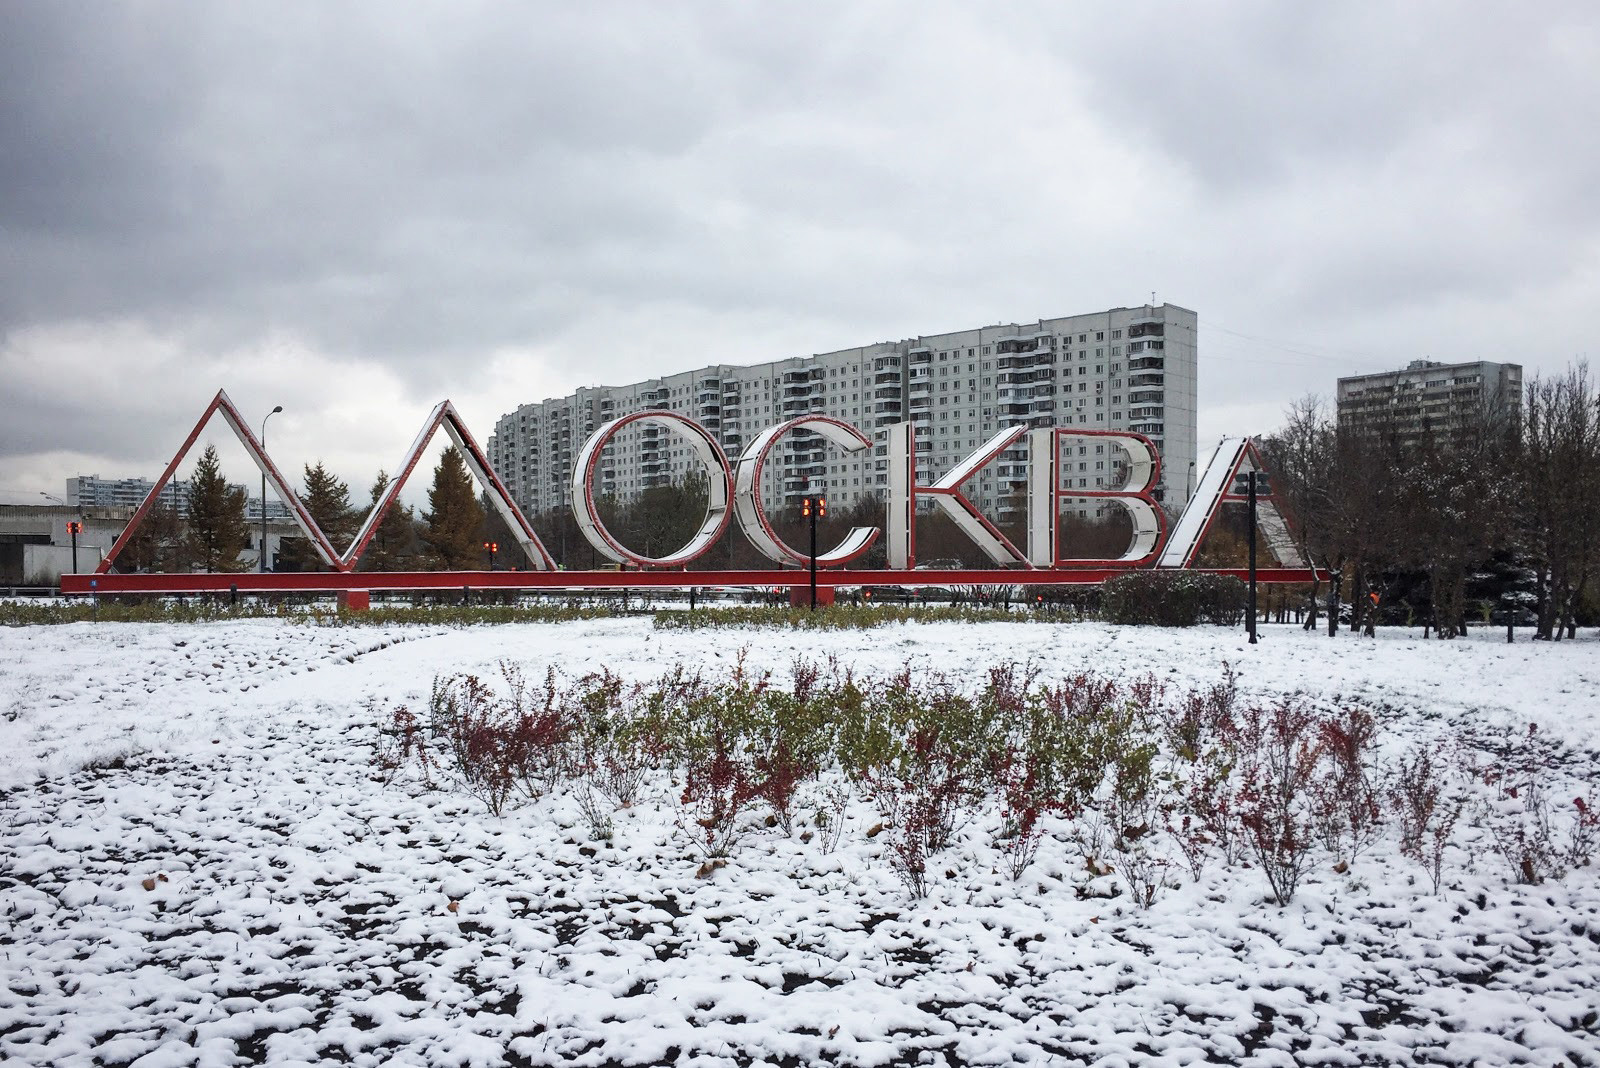 Prasasti Moskow di Ulitsa Varshavskoe shosse.
